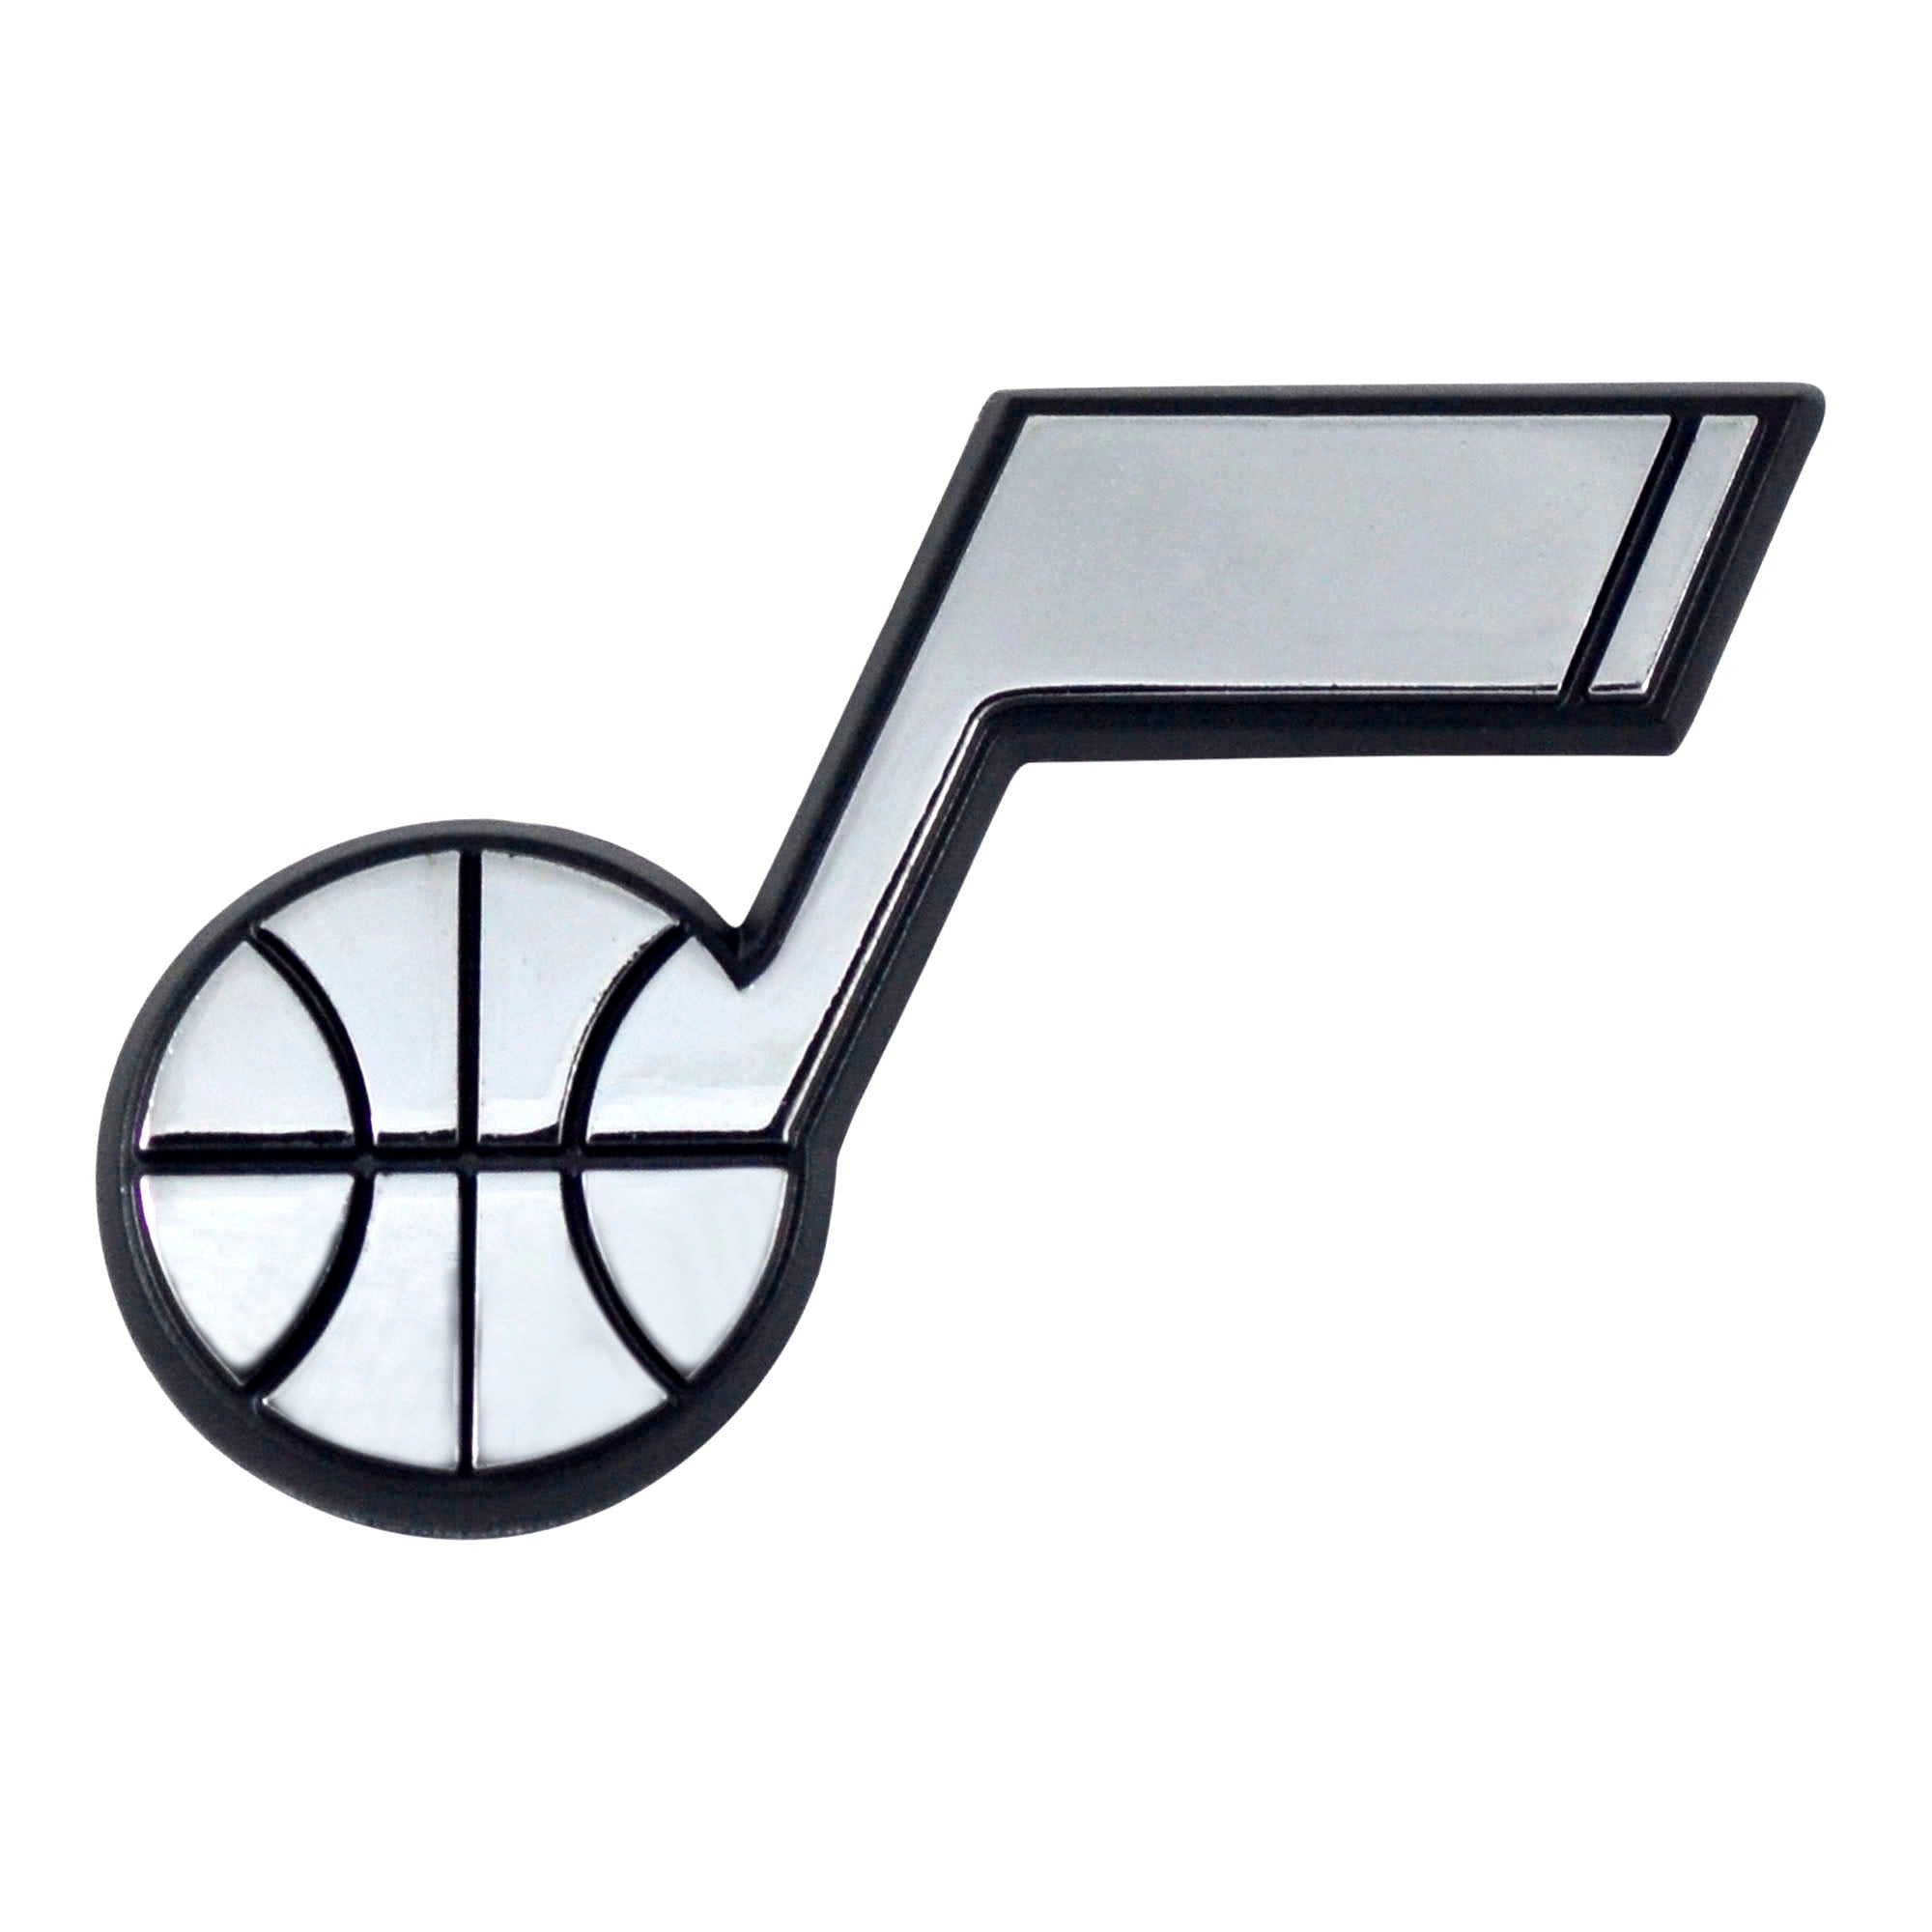 Utah Jazz 3D Chrome Emblem